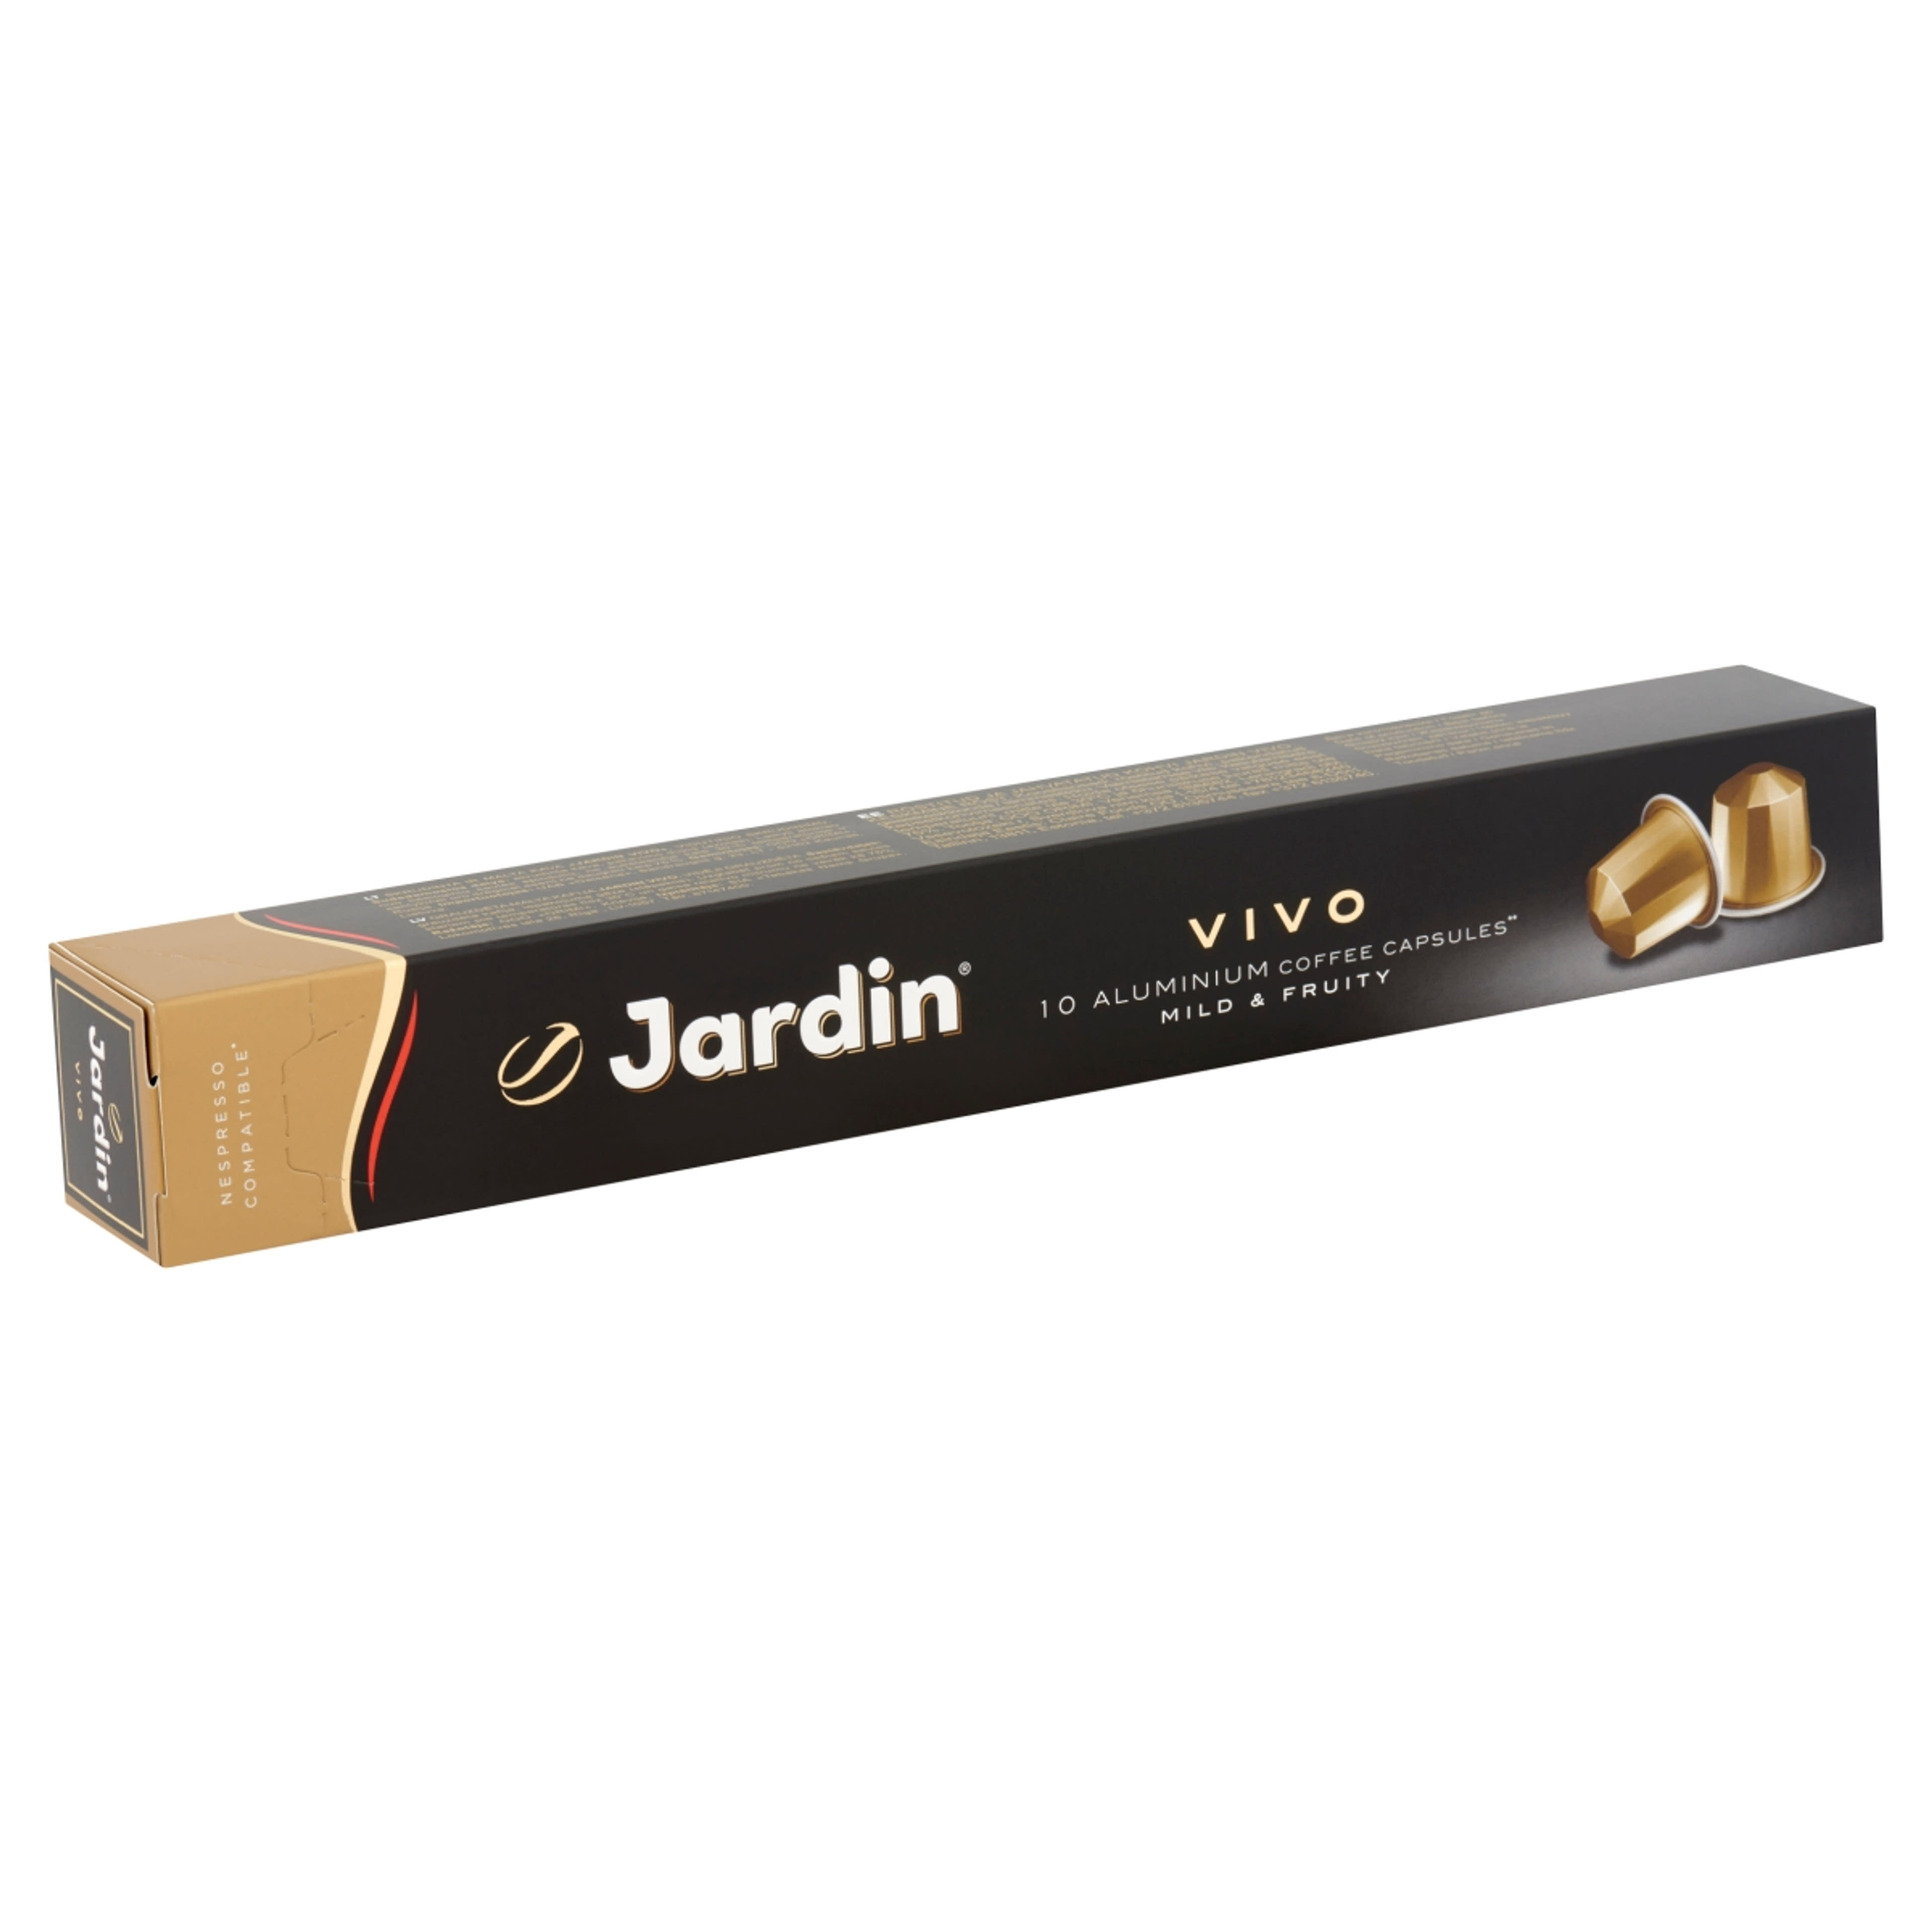 Jardin Vivo kapszula - 50 g-2